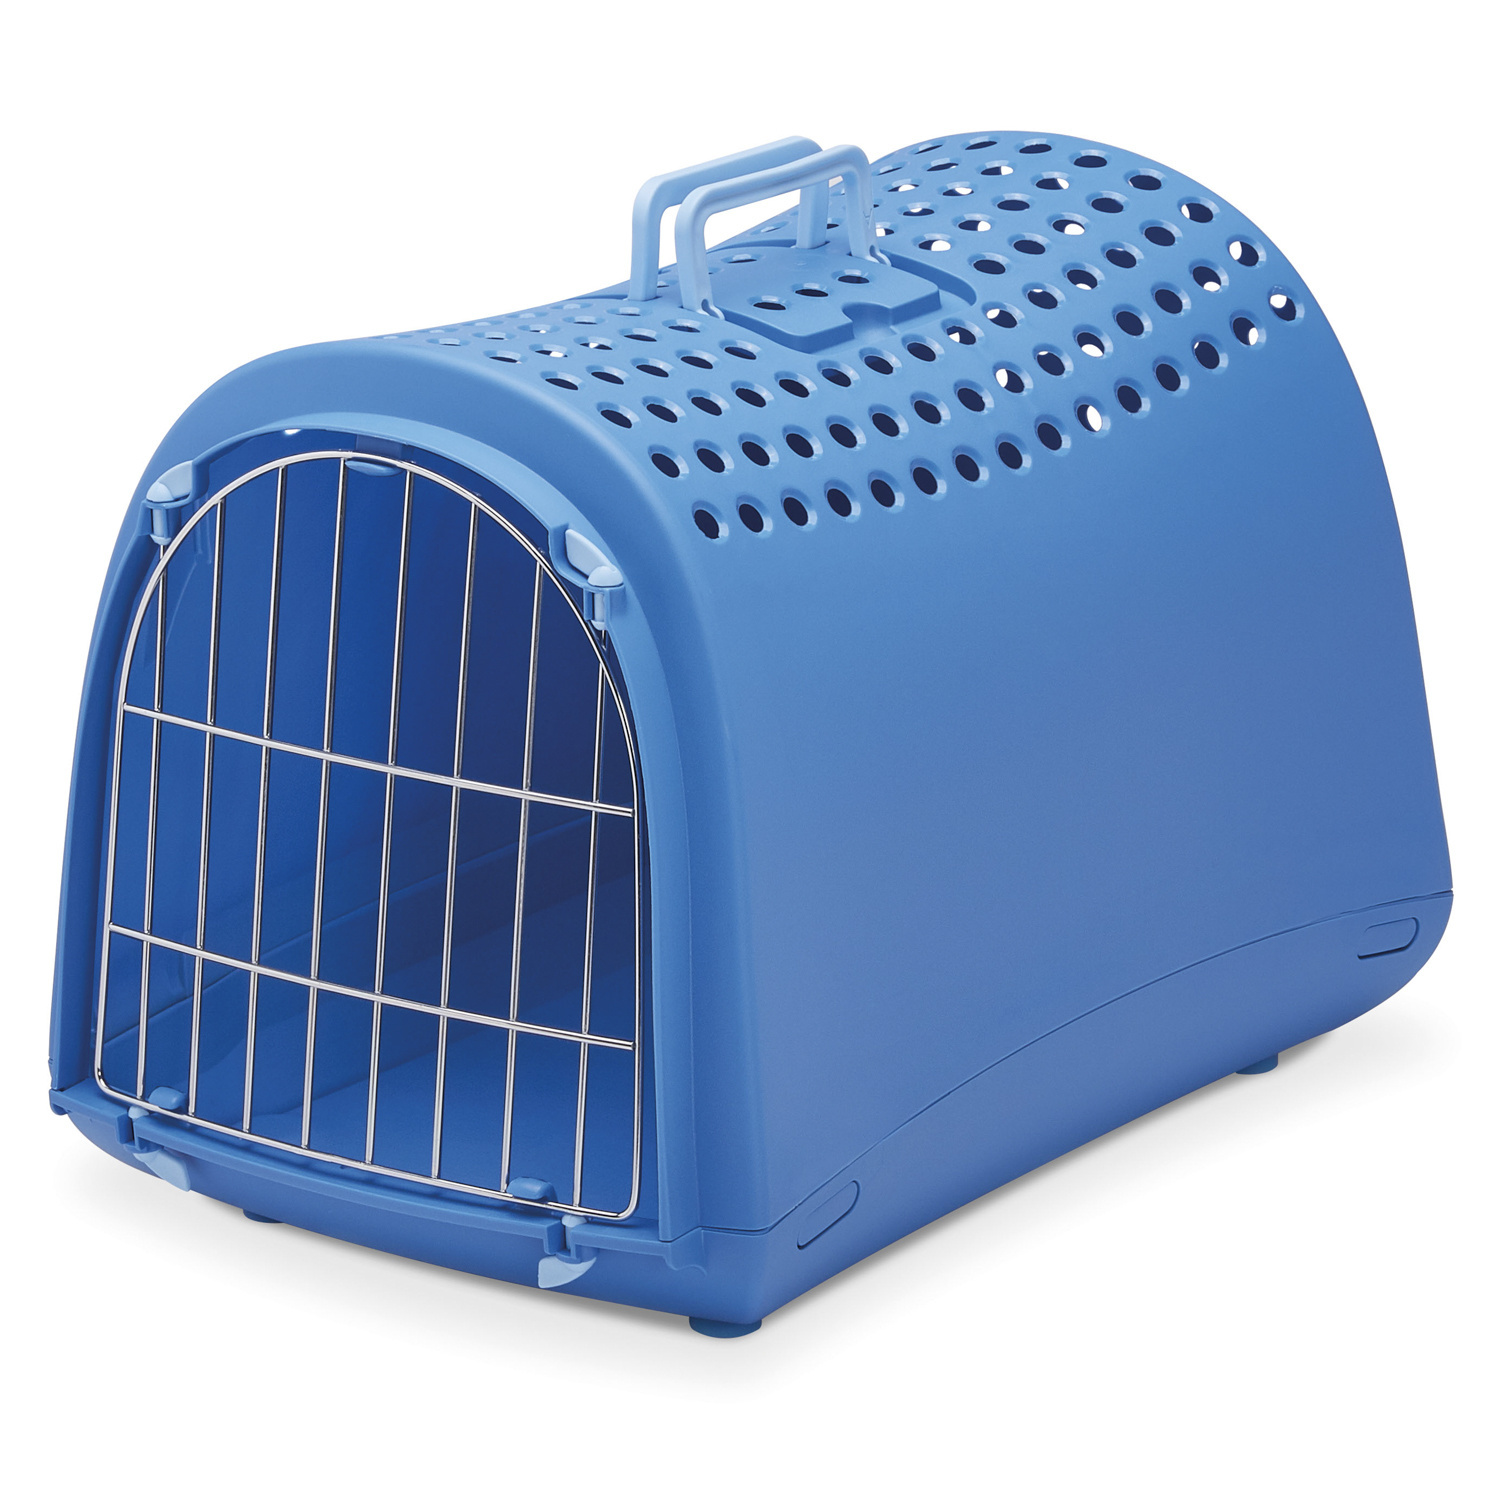 IMAC IMAC переноска для кошек и собак, нежно-голубой (1,37 кг) imac imac переноска для кошек и собак нежно голубой 1 37 кг